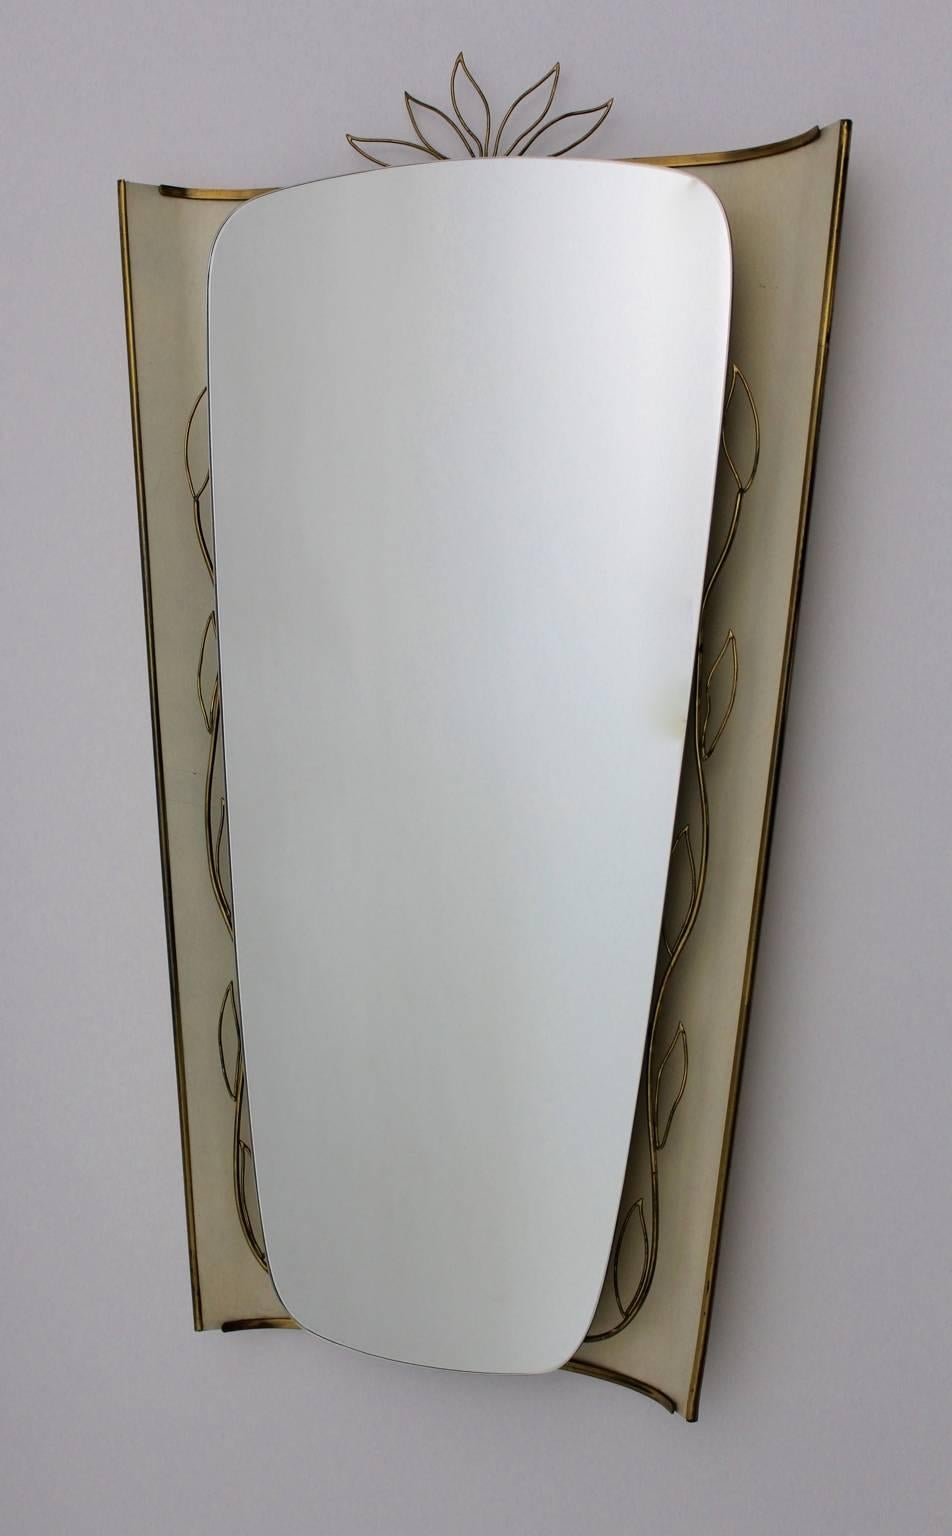 Miroir mural ou miroir de sol éclairé de style Gio Ponti ,1950s Allemagne, en tôle et laiton. Dans le ton de couleur buttercream.
Le miroir mural présente un délicat décor incurvé en laiton, tandis que le ton de couleur laqué ivoire ou crème au